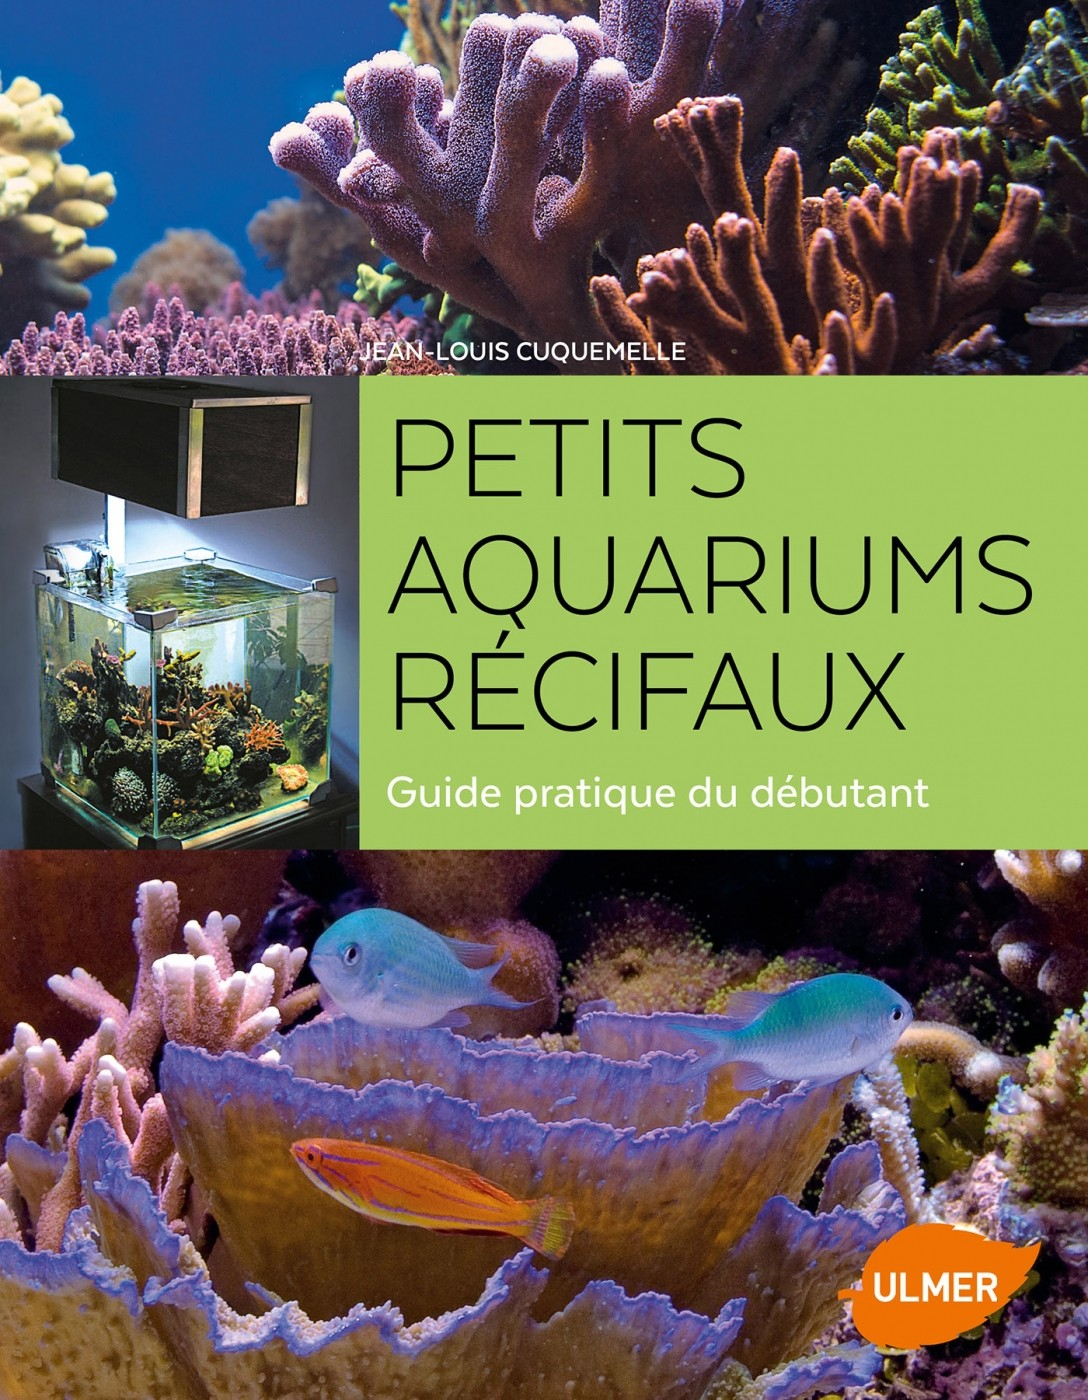 Pequenos aquários de recife, Nova edição